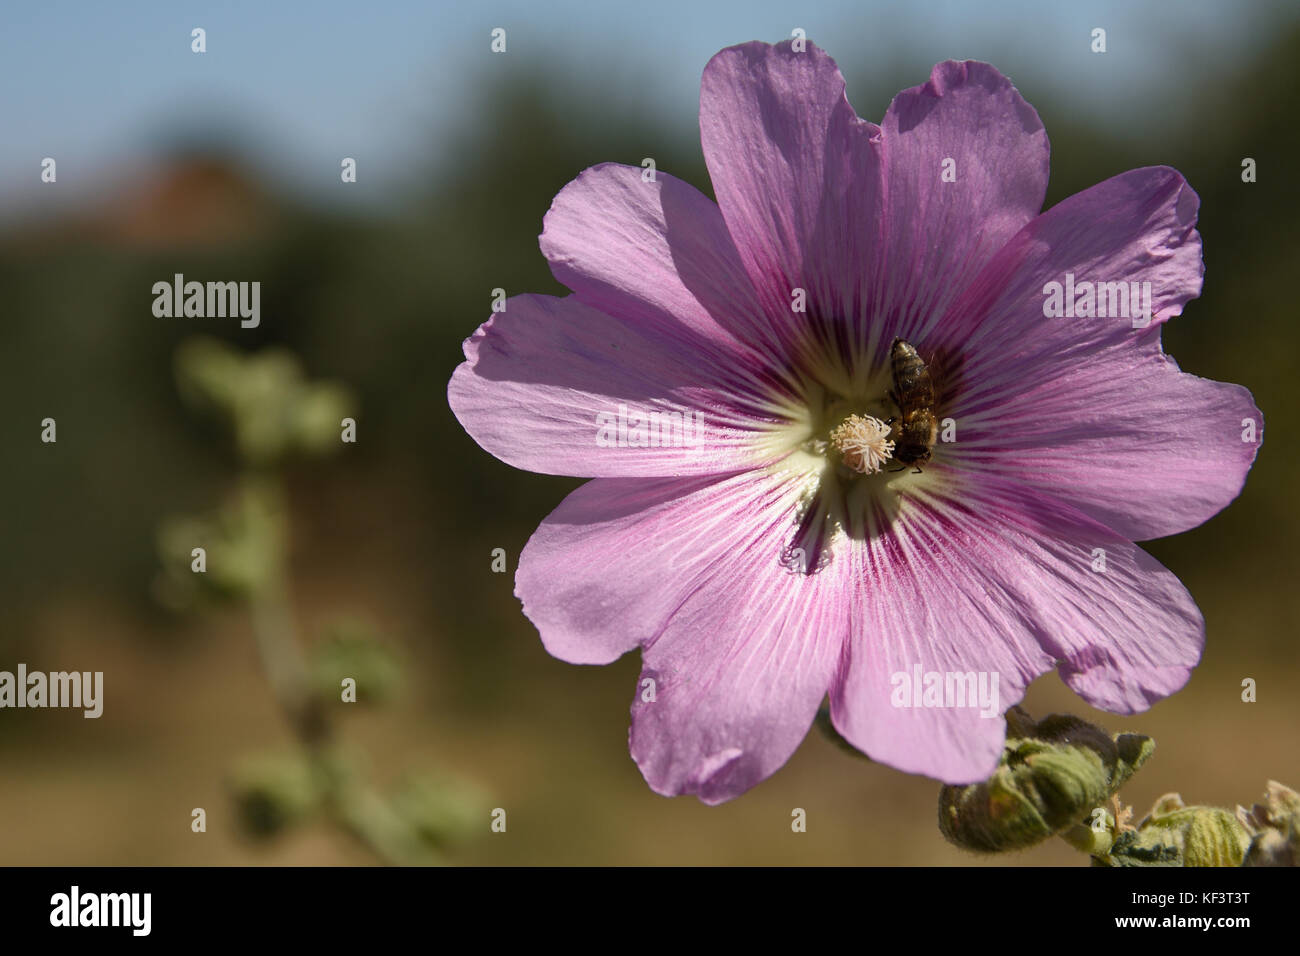 Gros plan d'une fleur avec une abeille mellifère sur les étamines, photo de Thassos Grèce. Banque D'Images